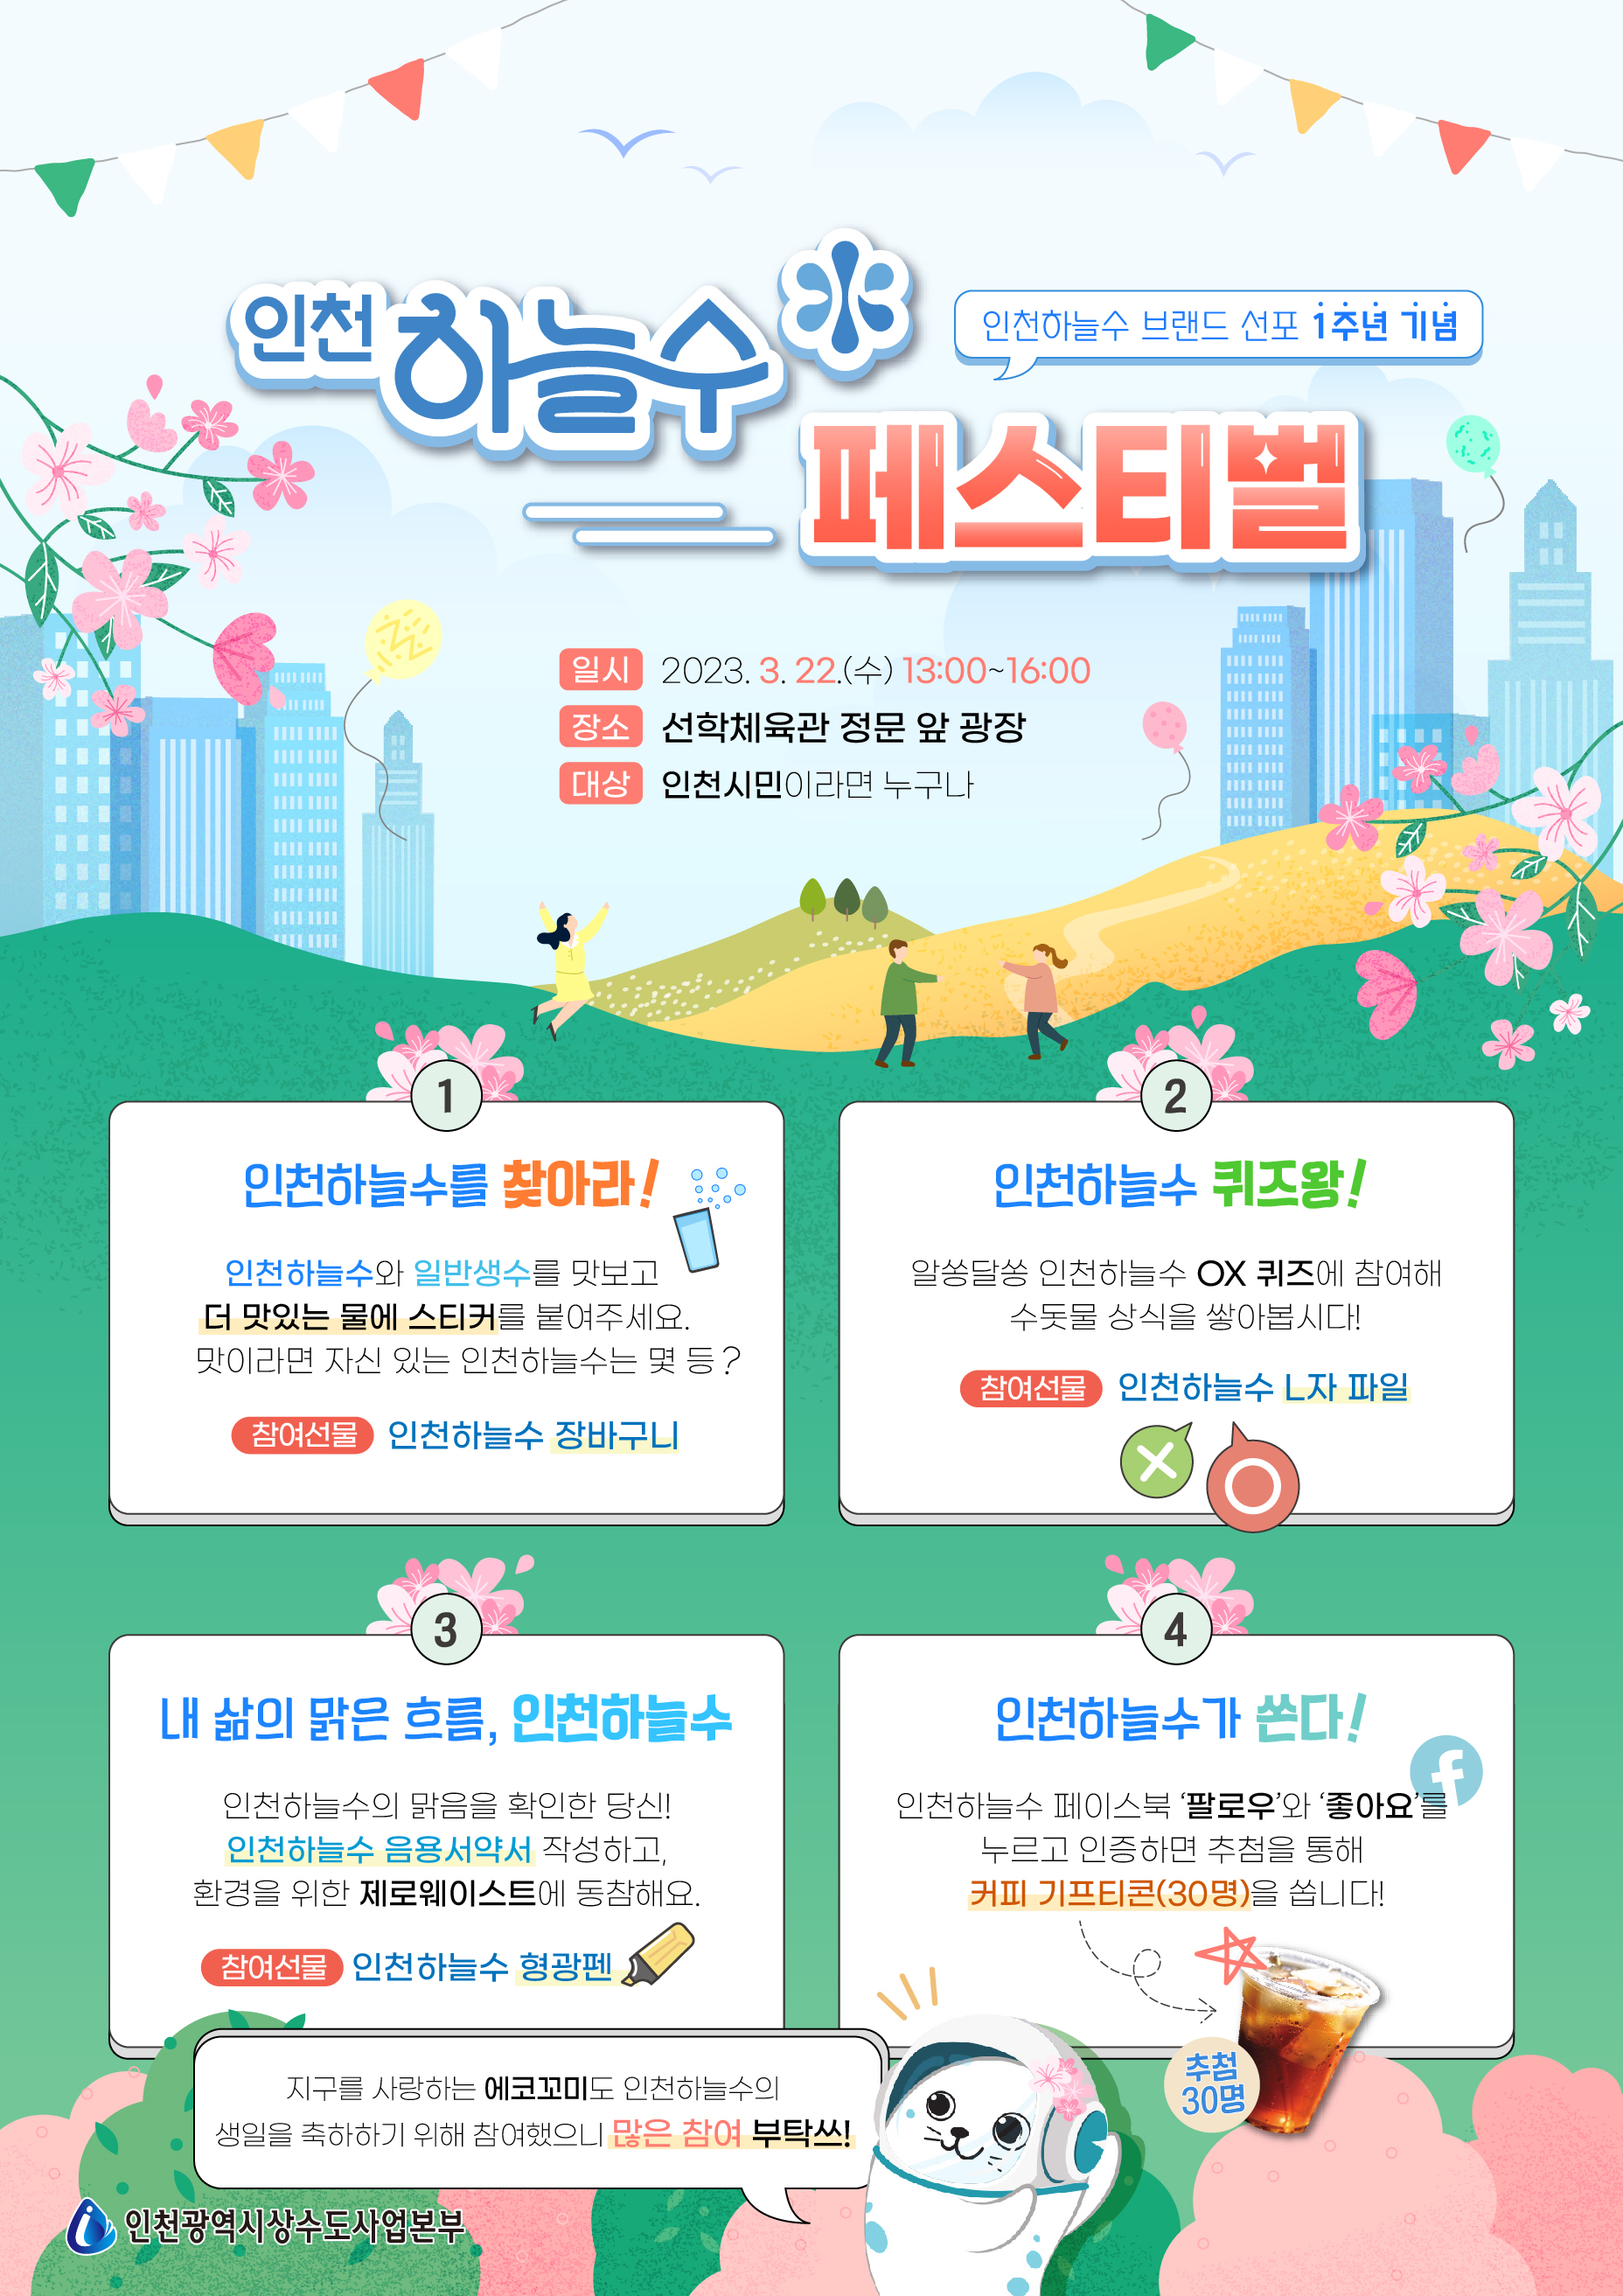 인천 수돗물 ‘인천하늘수’ 탄생 1주년을 축하해주세요! 관련 이미지